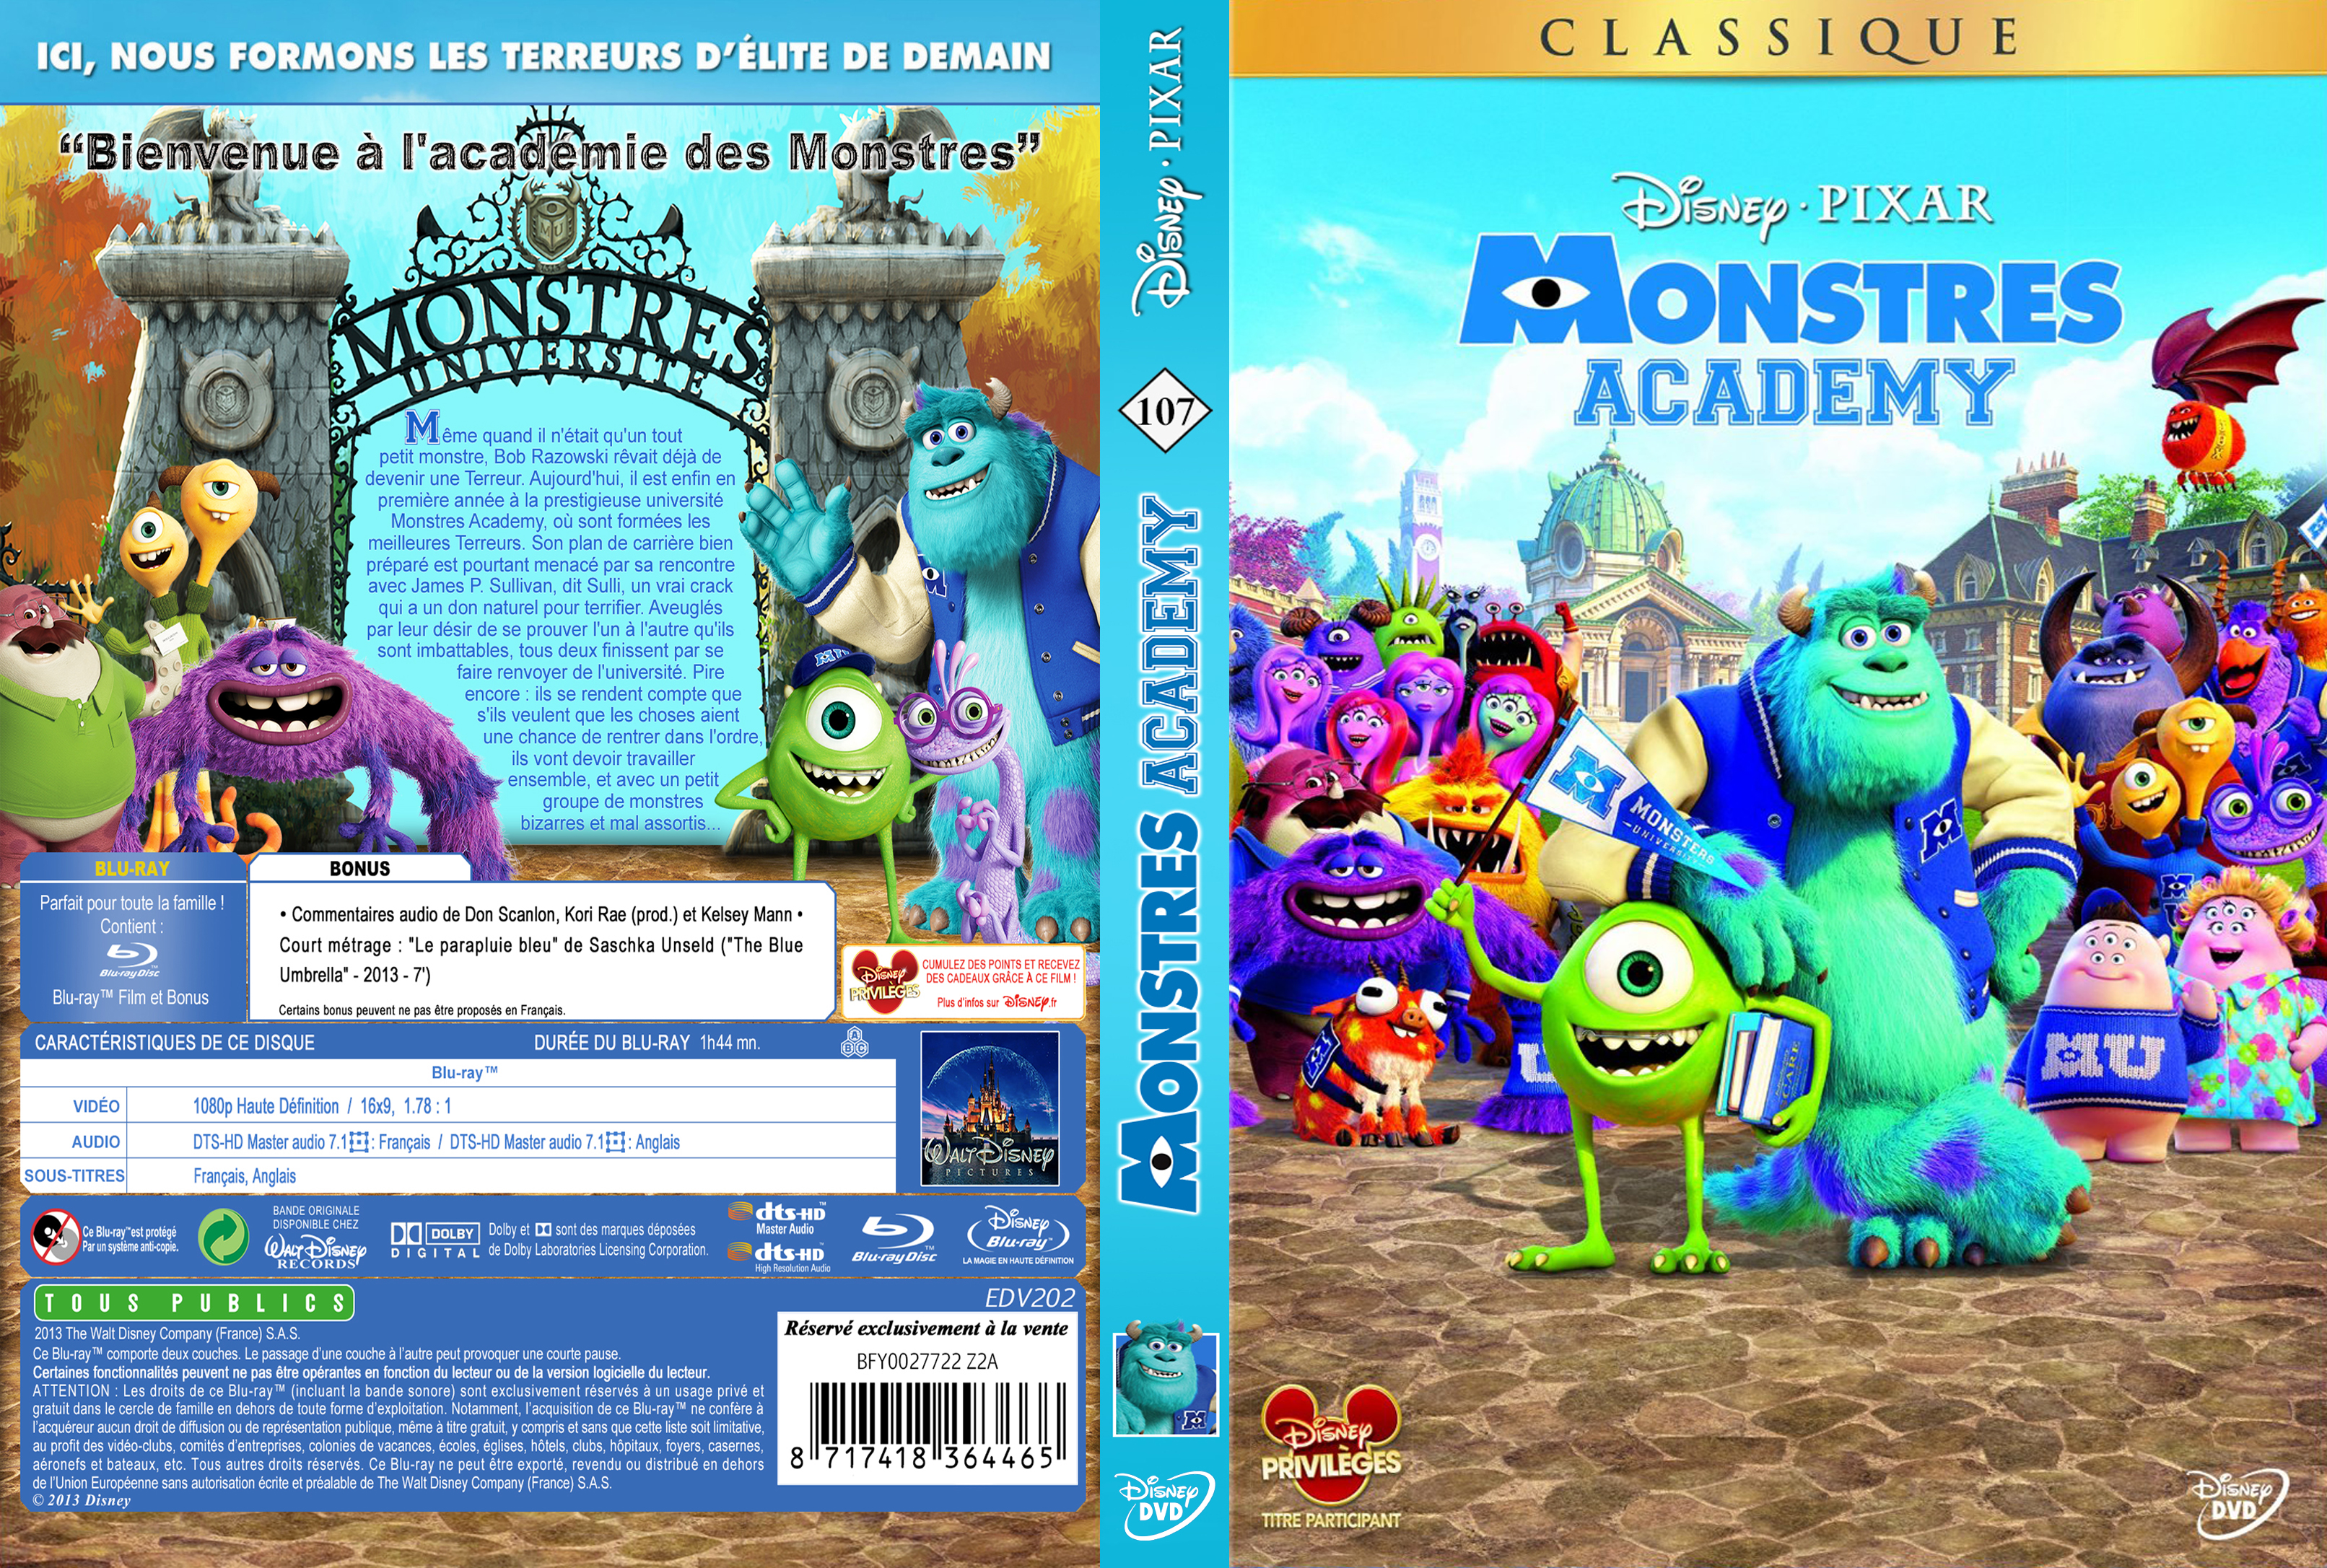 Jaquette DVD Monstres Academy custom v2